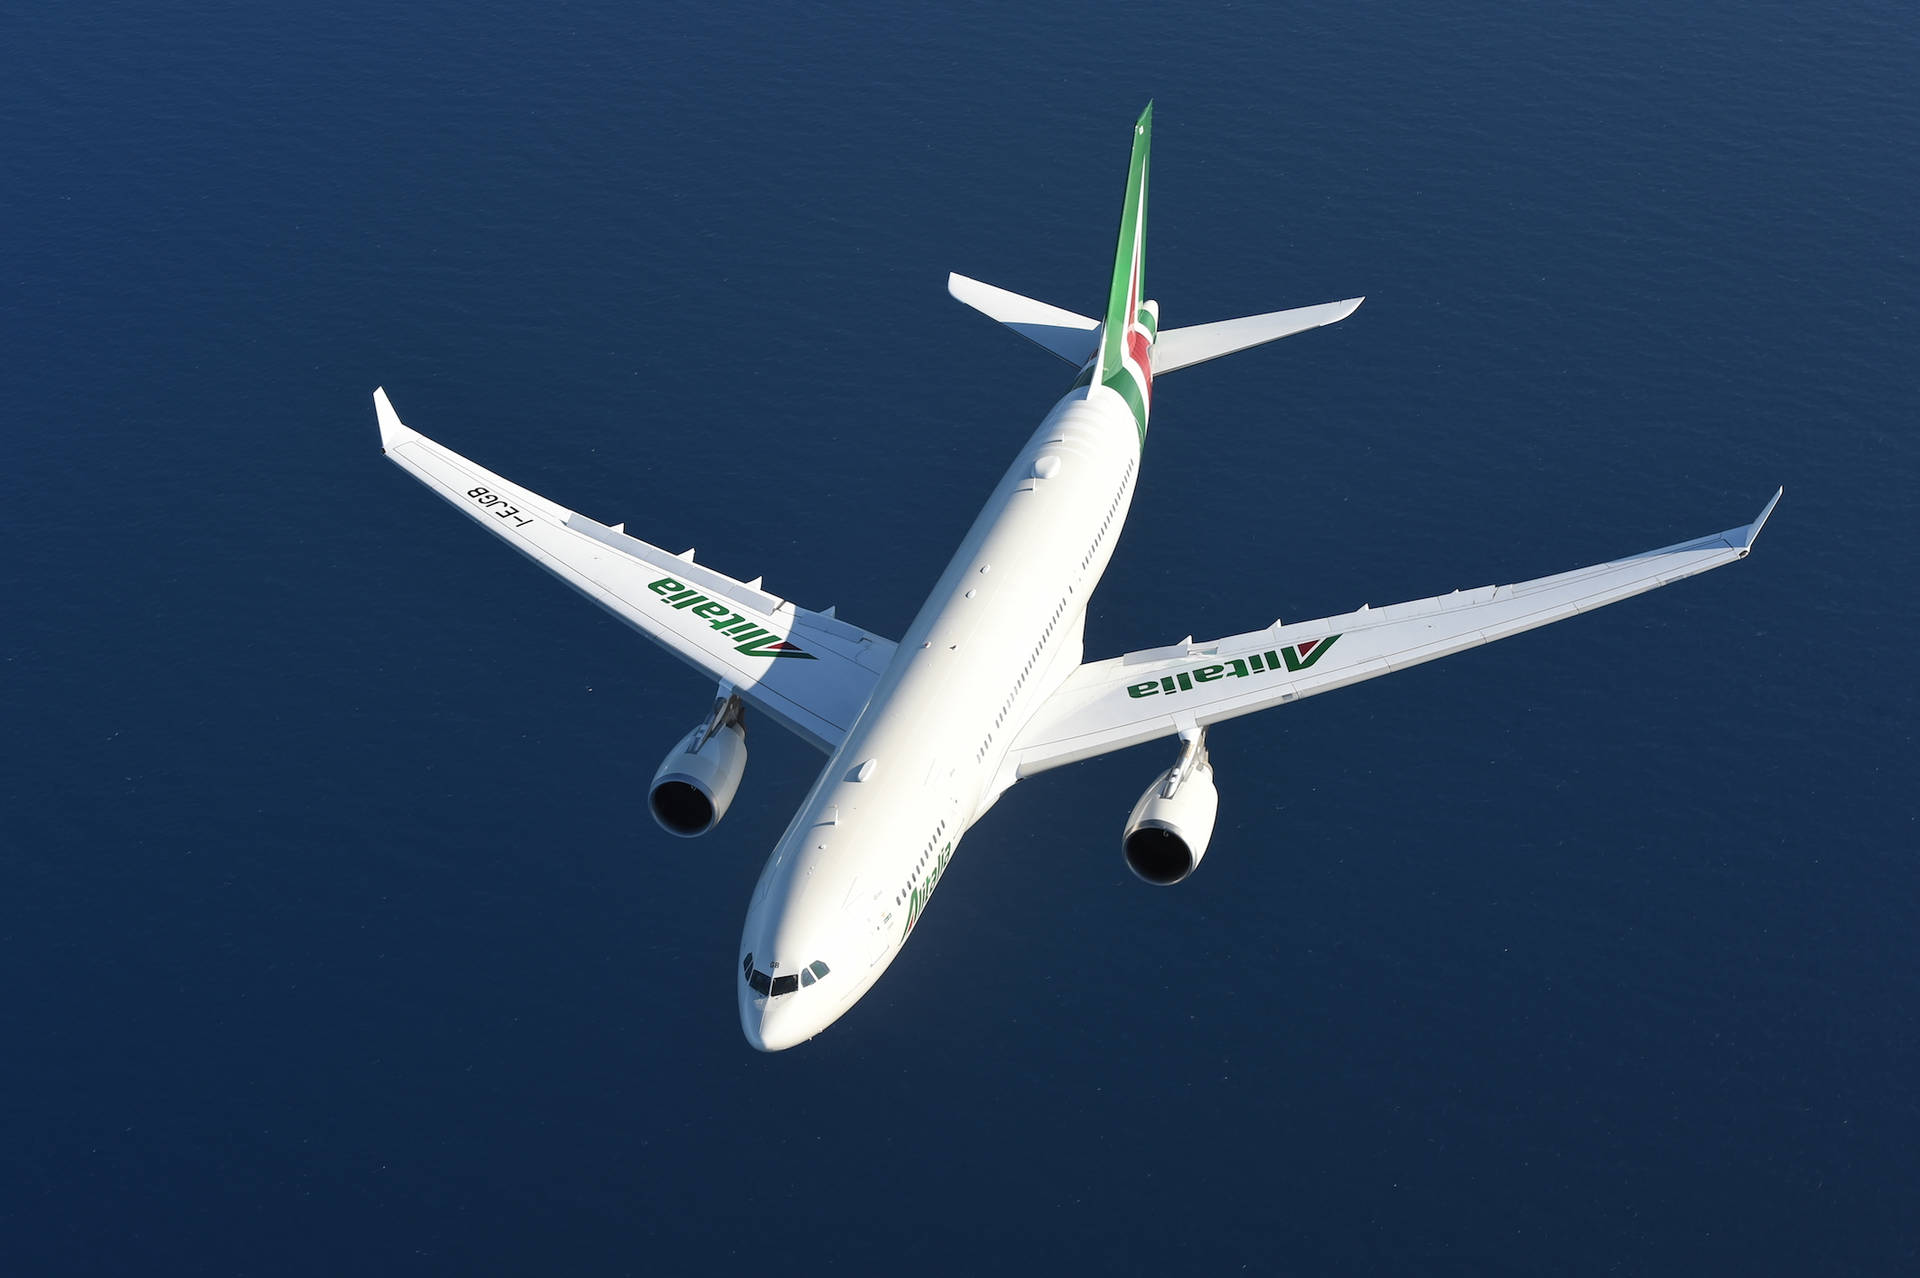 Alitalia Aircraft Wallpaper